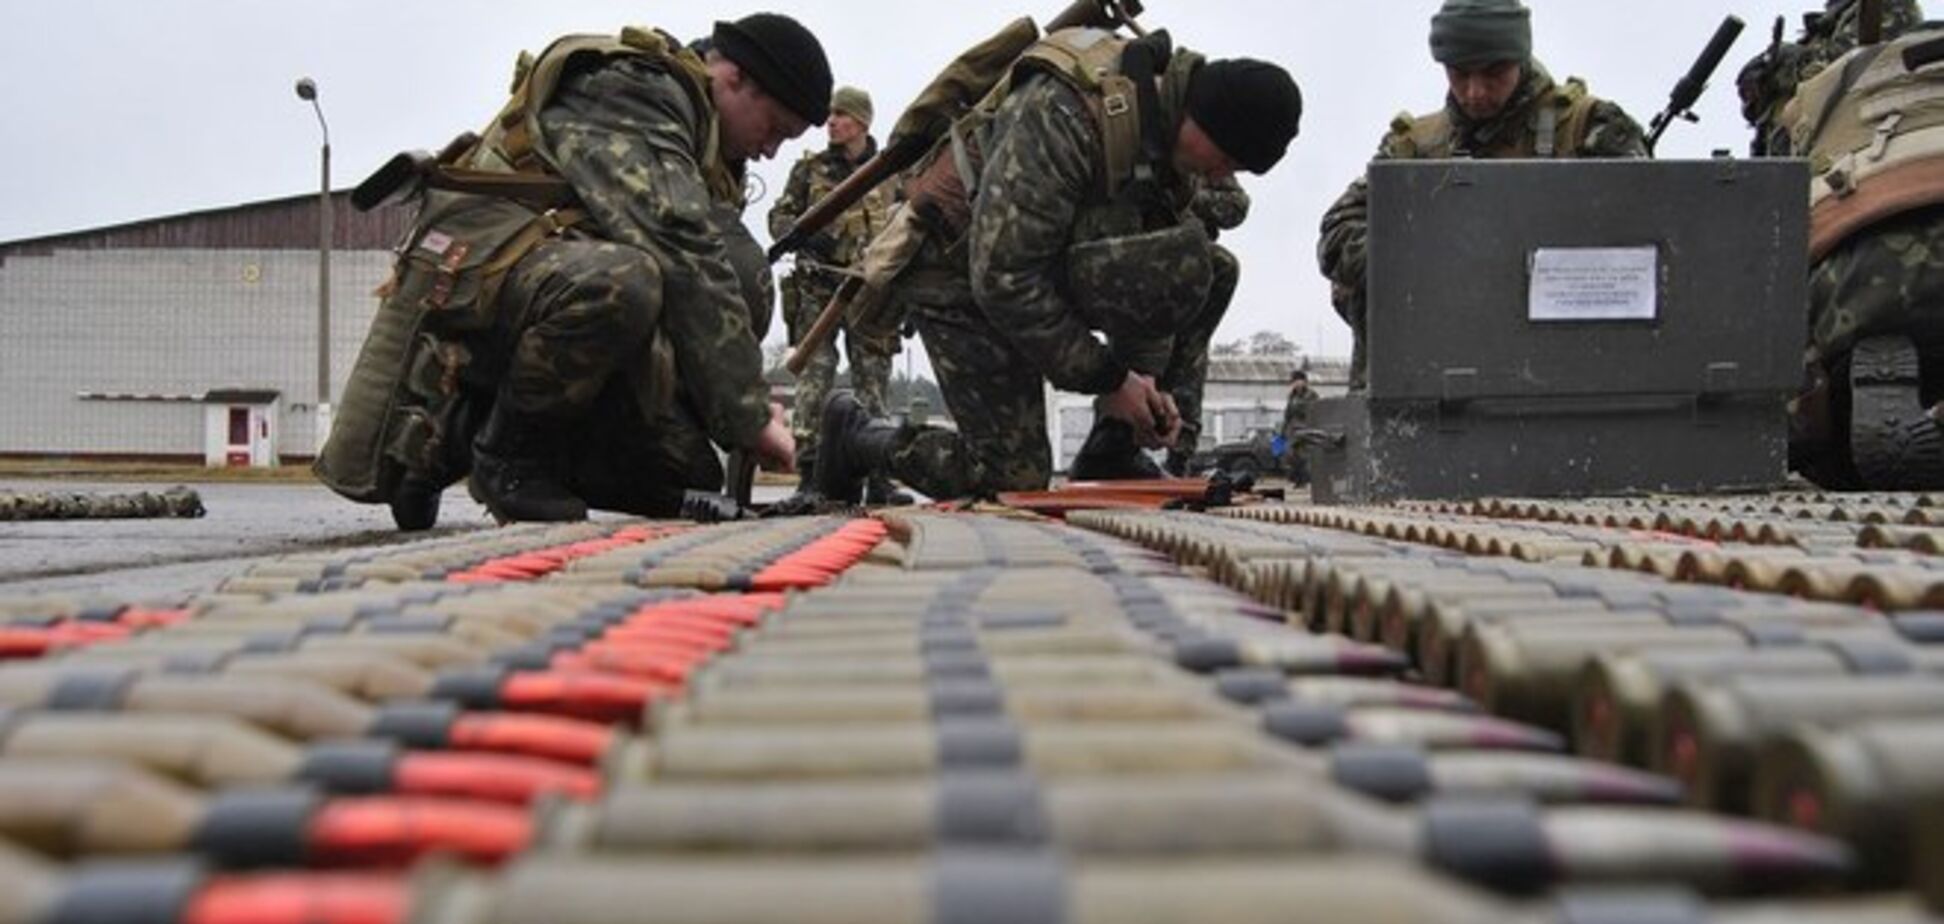 Из 131 млн грн, собранных украинцами на поддержку армии, потрачено только 16 - Геращенко